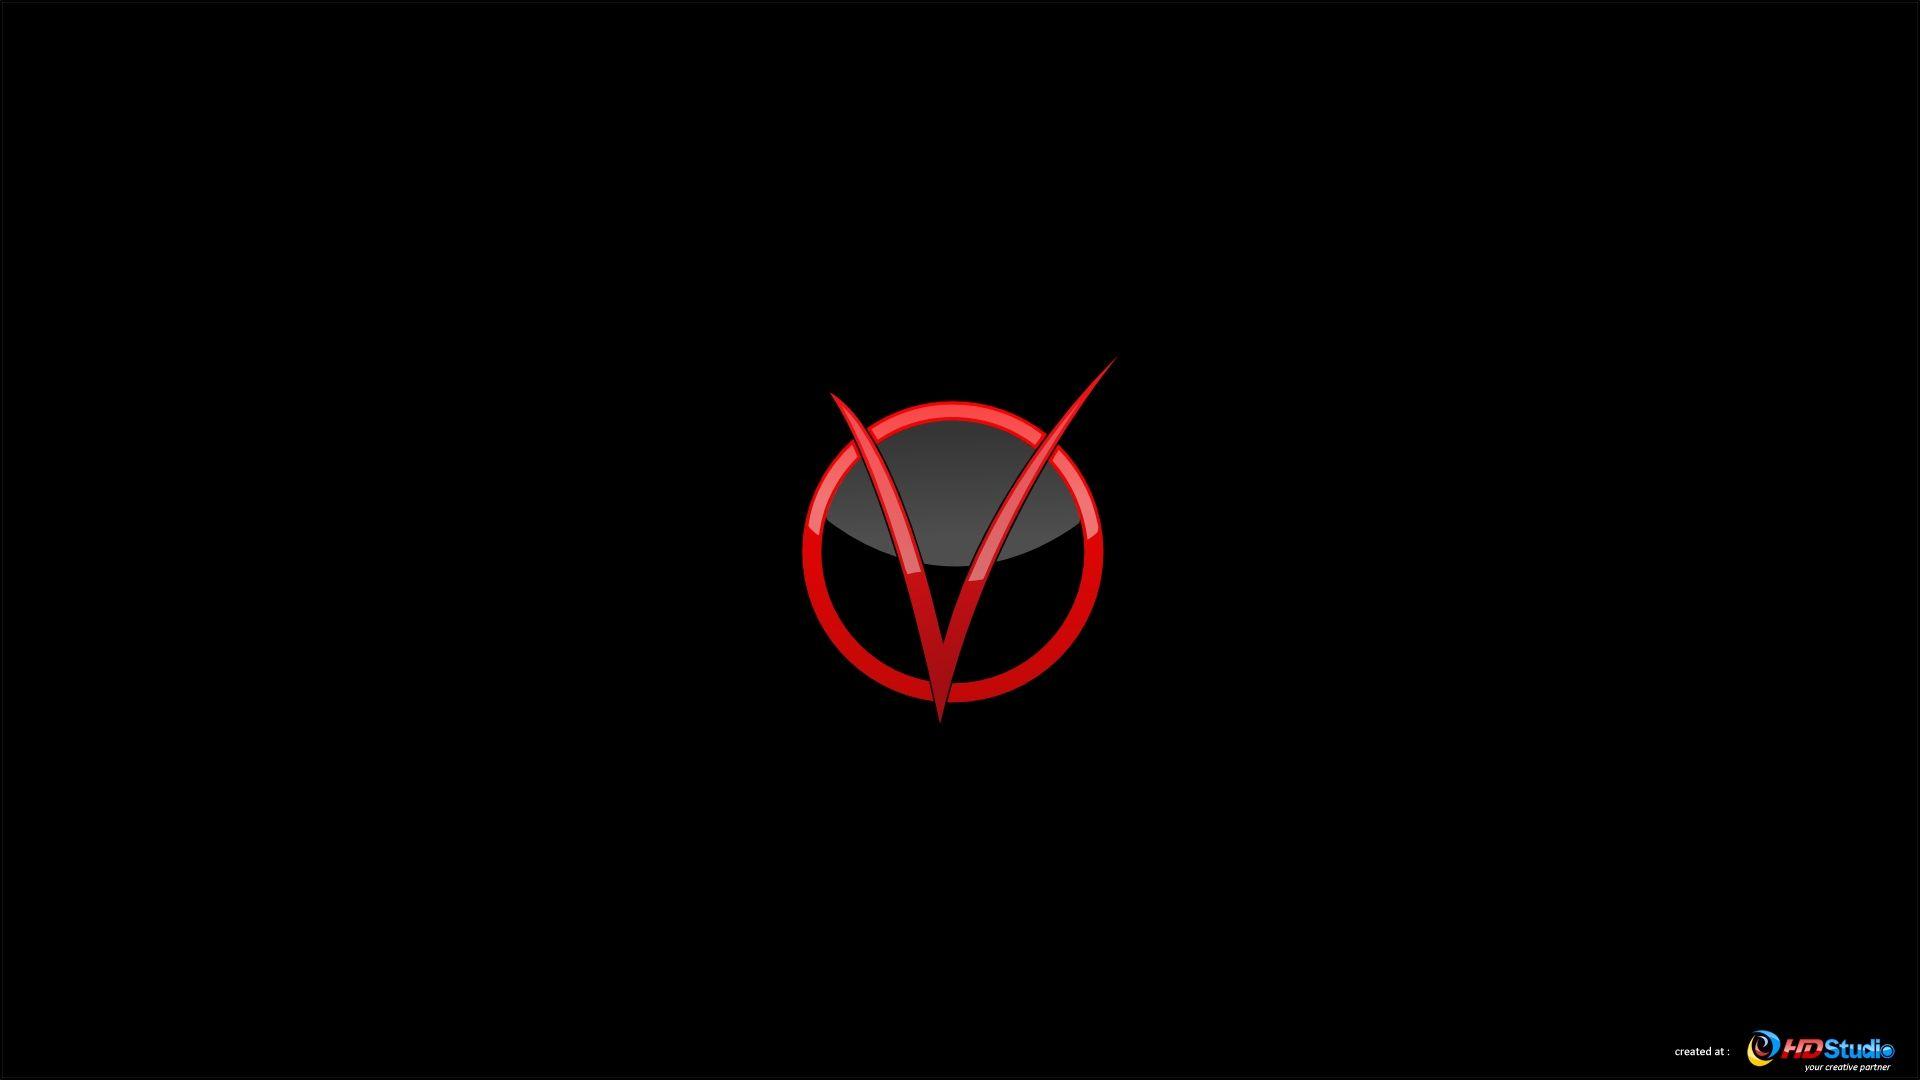 V for Vendetta V Logo - V For Vendetta Wallpapers - Wallpaper Cave